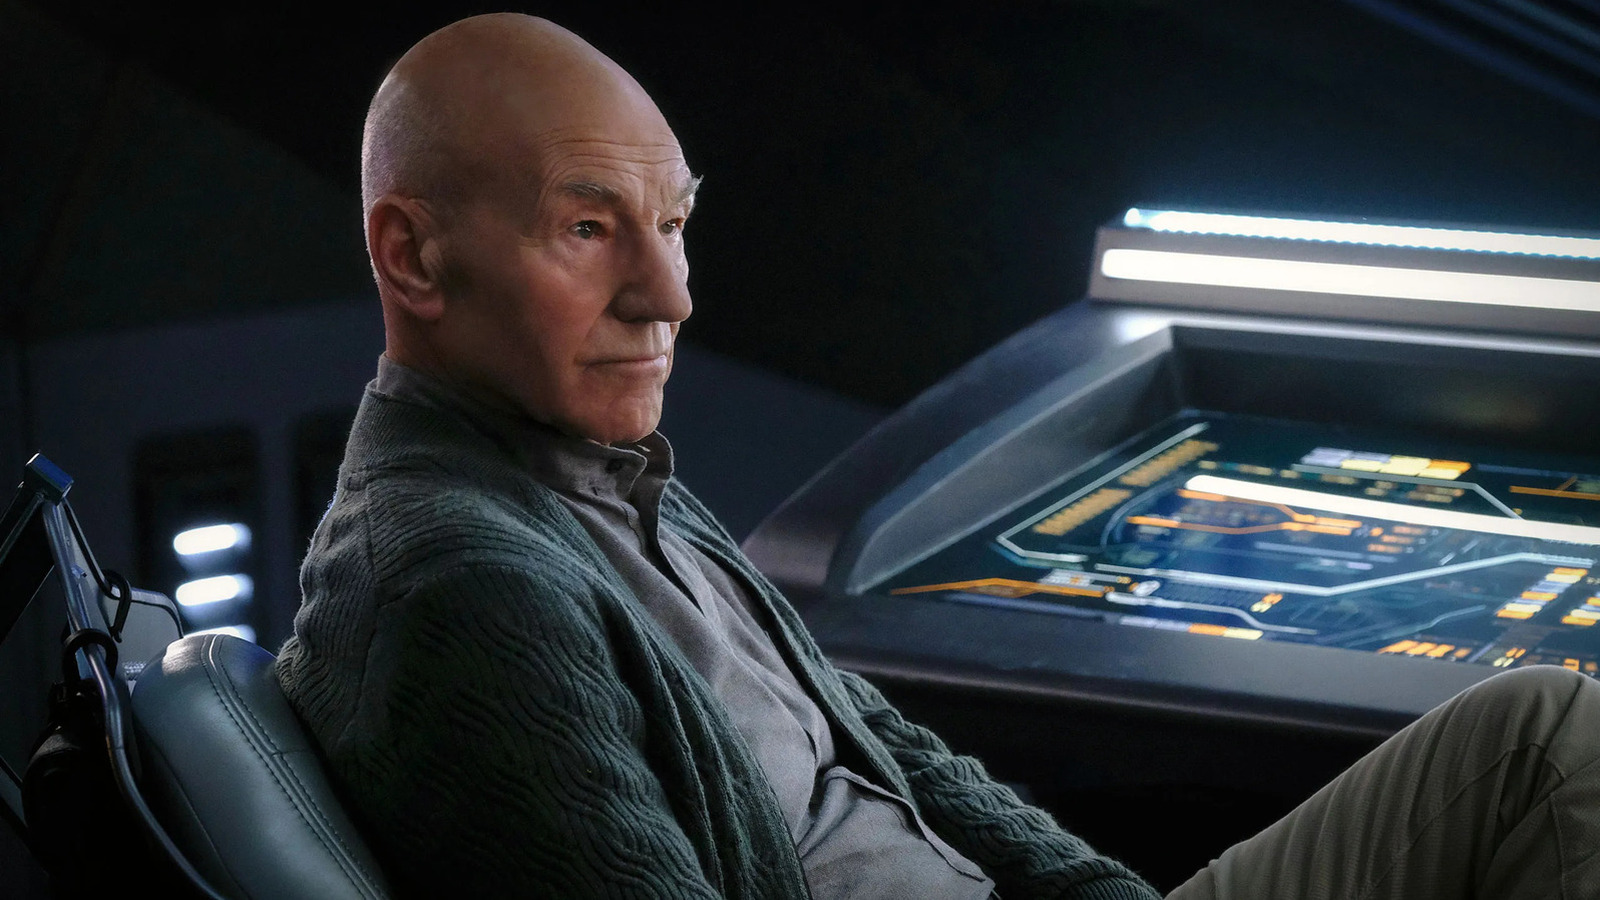 Star Trek: Picard took a historic approach to updating next-gen tech